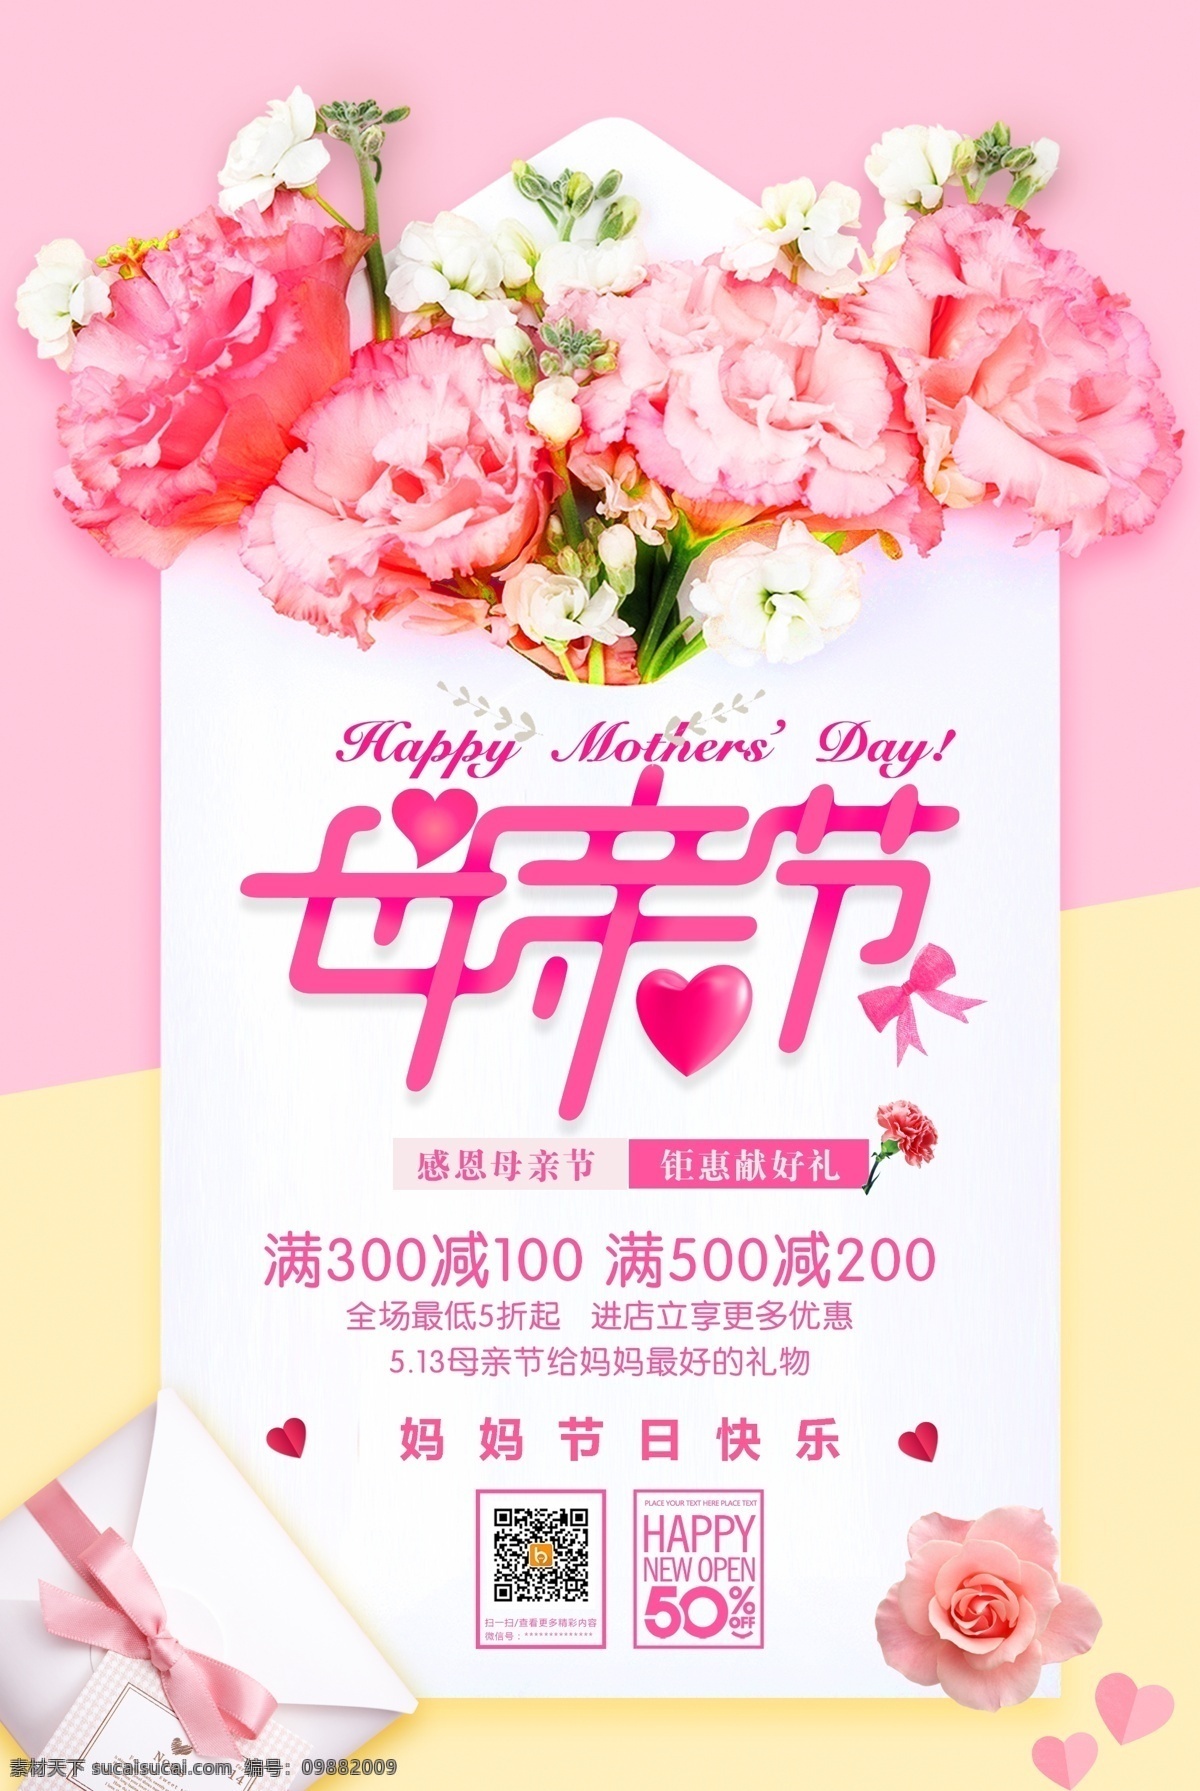 母亲节 粉红色 海报 回忆 粉红色背景 鲜花 节日海报 手机端海报